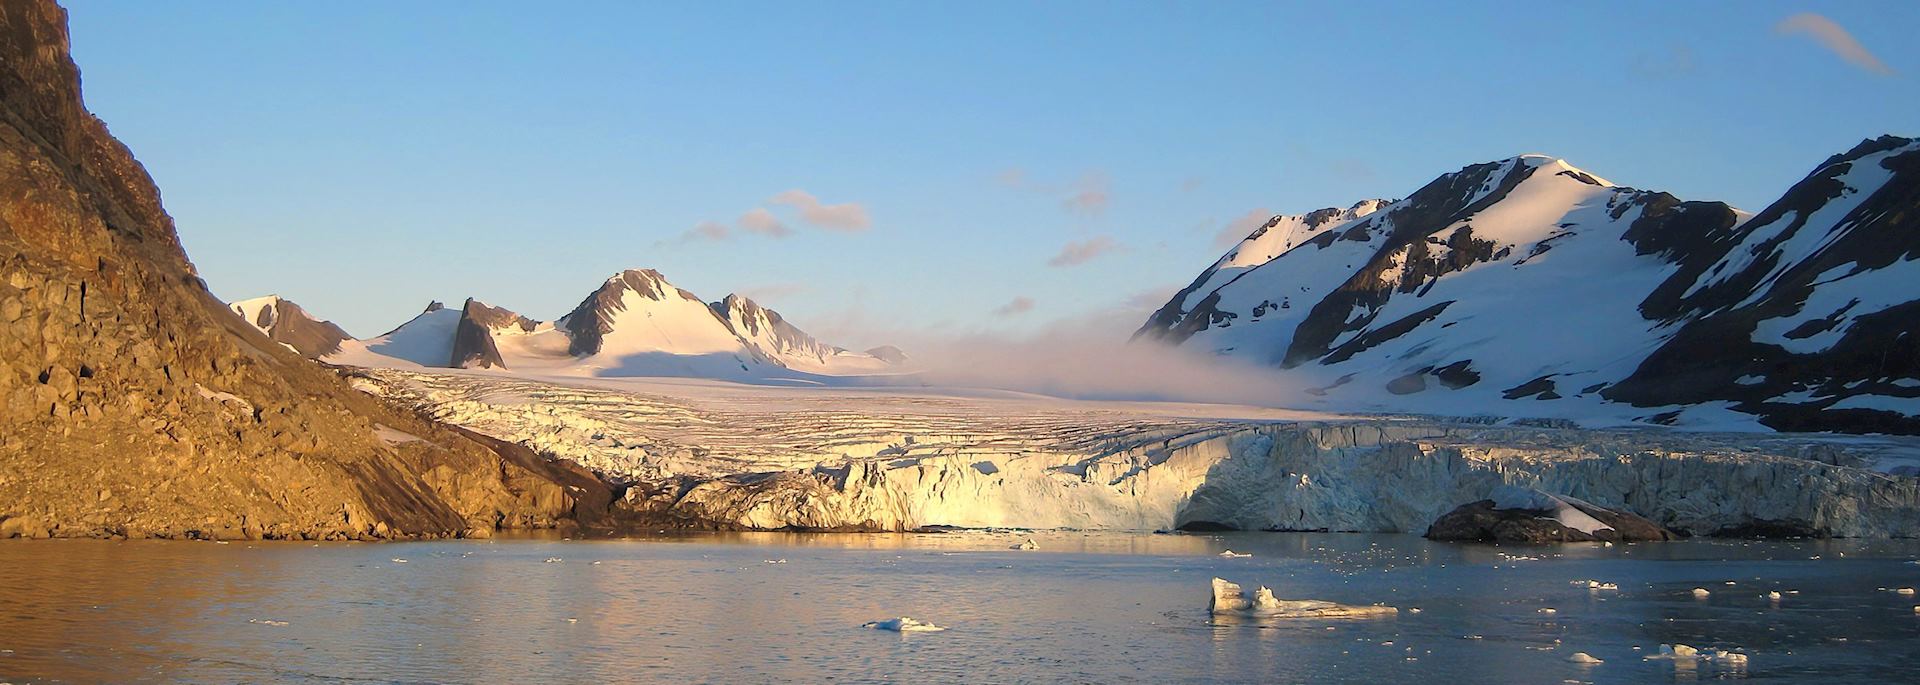 Glacier on Spitsbergen